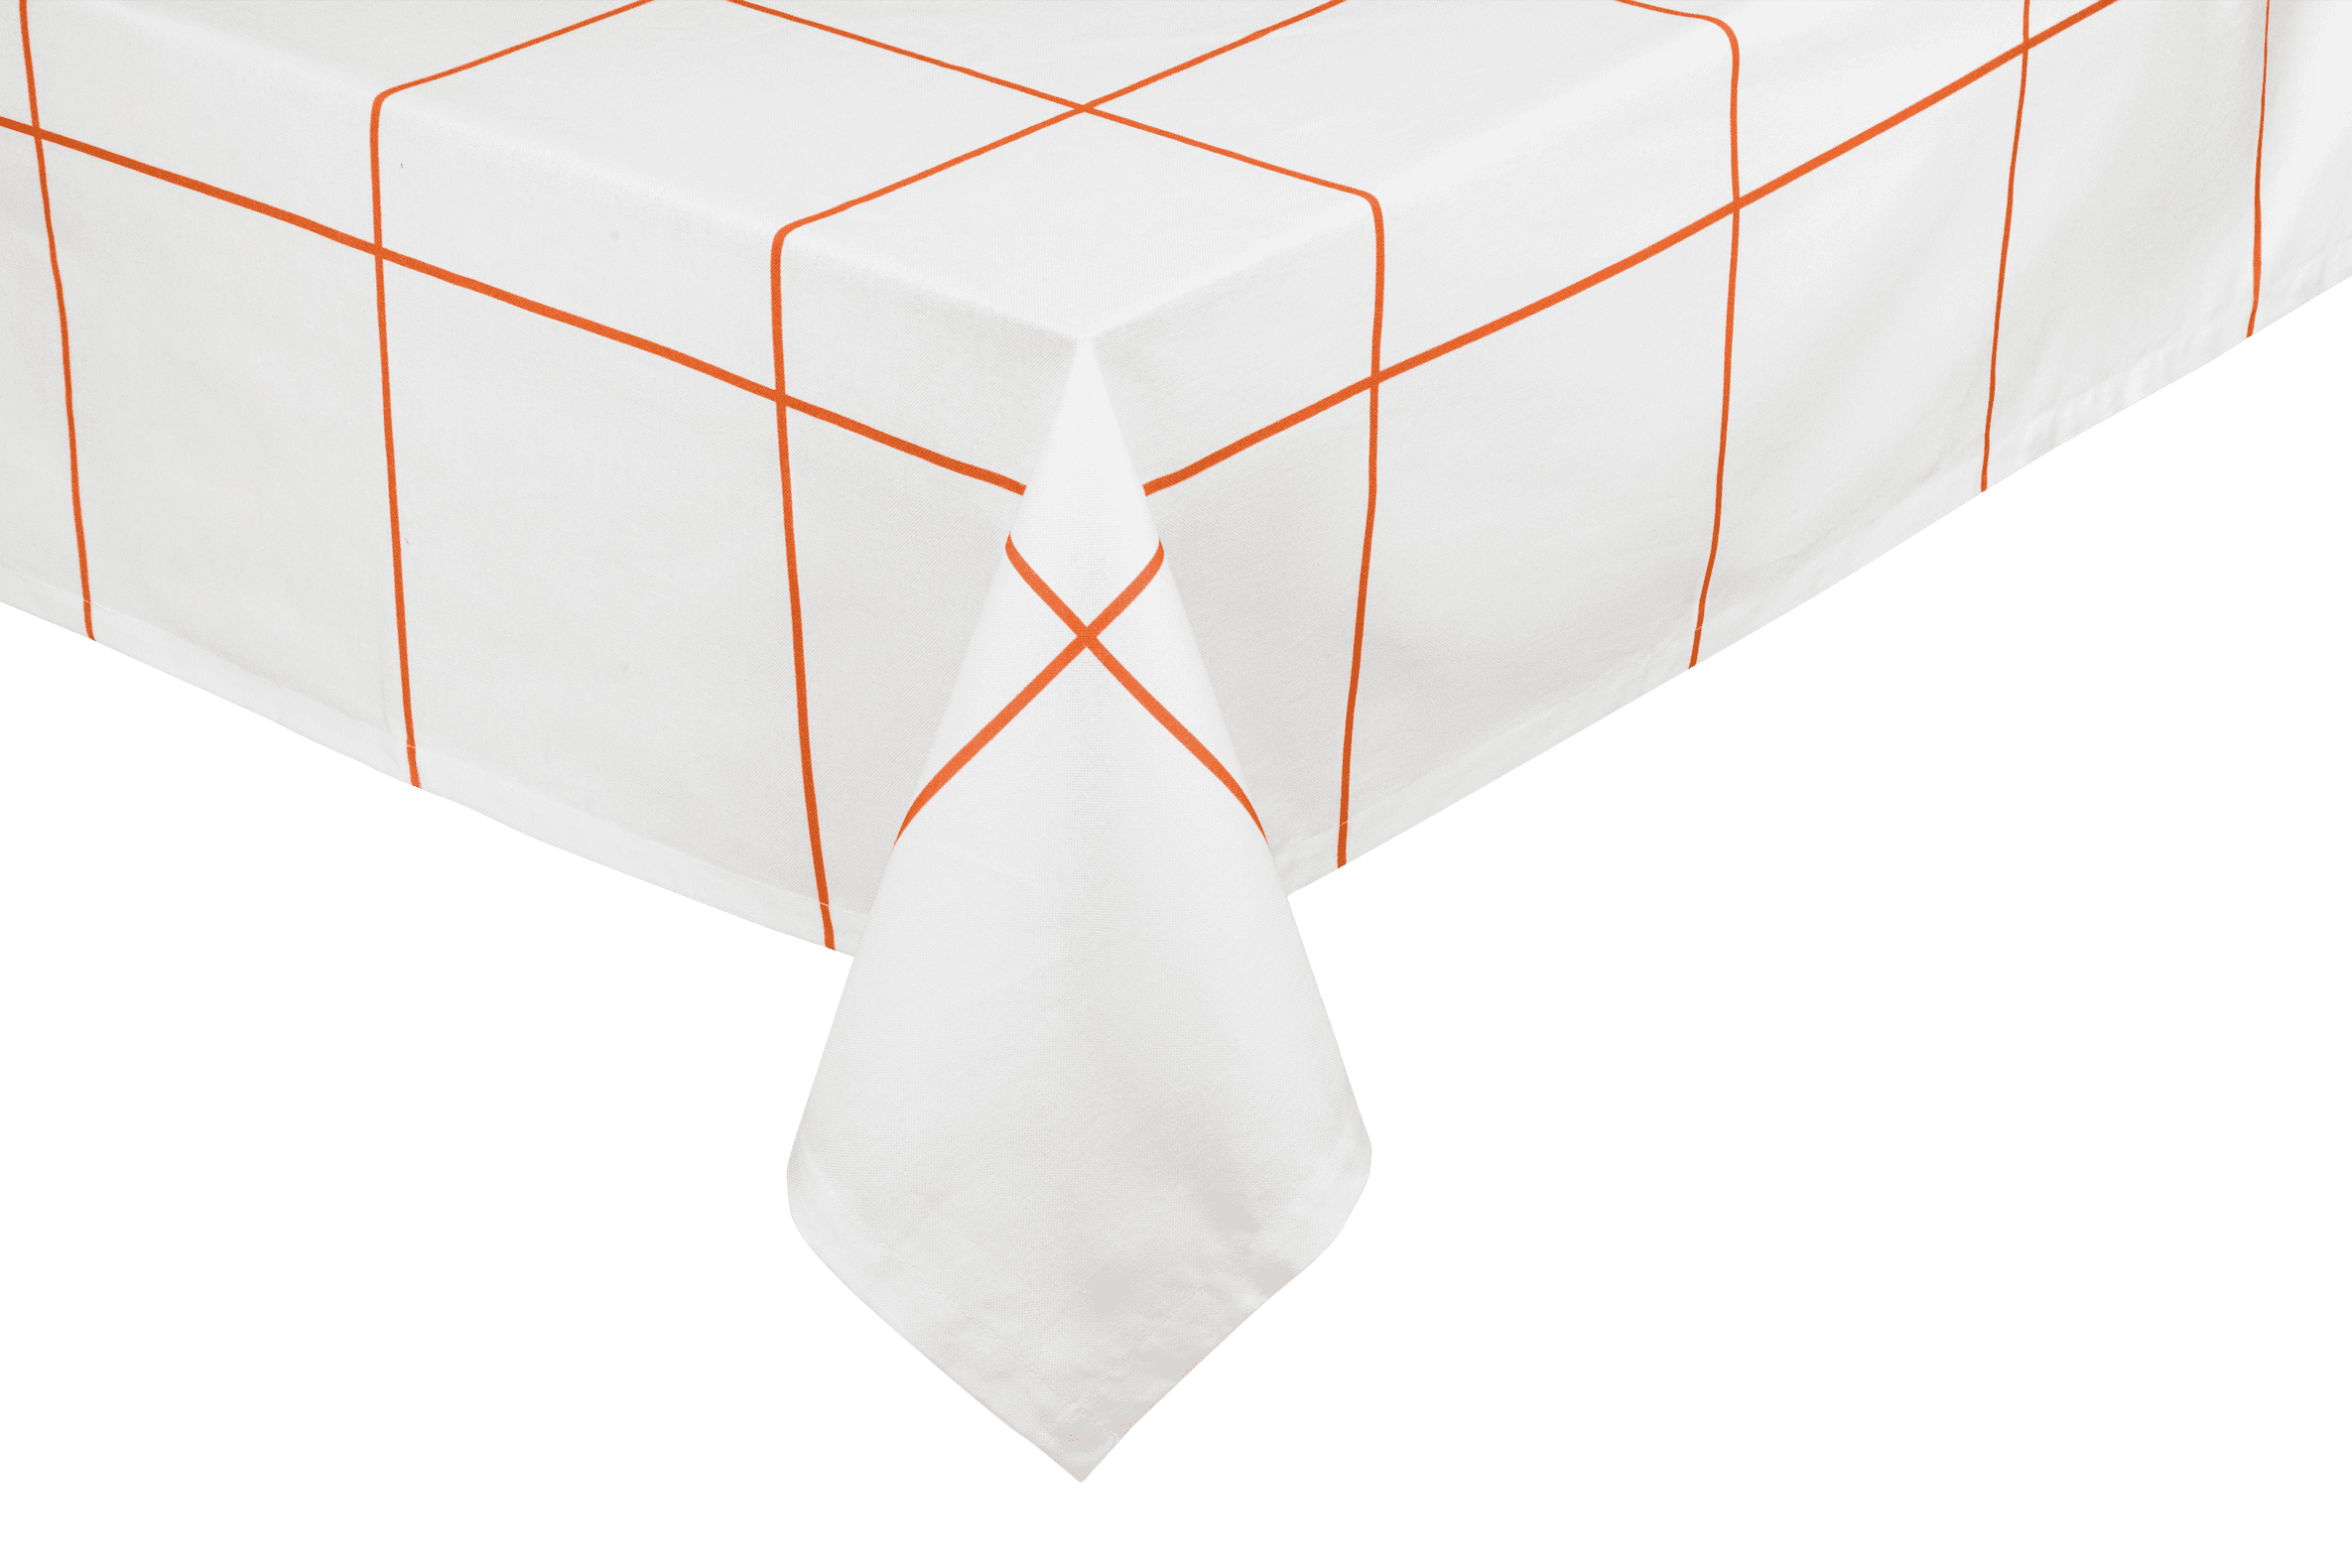 Marr Tablecloth